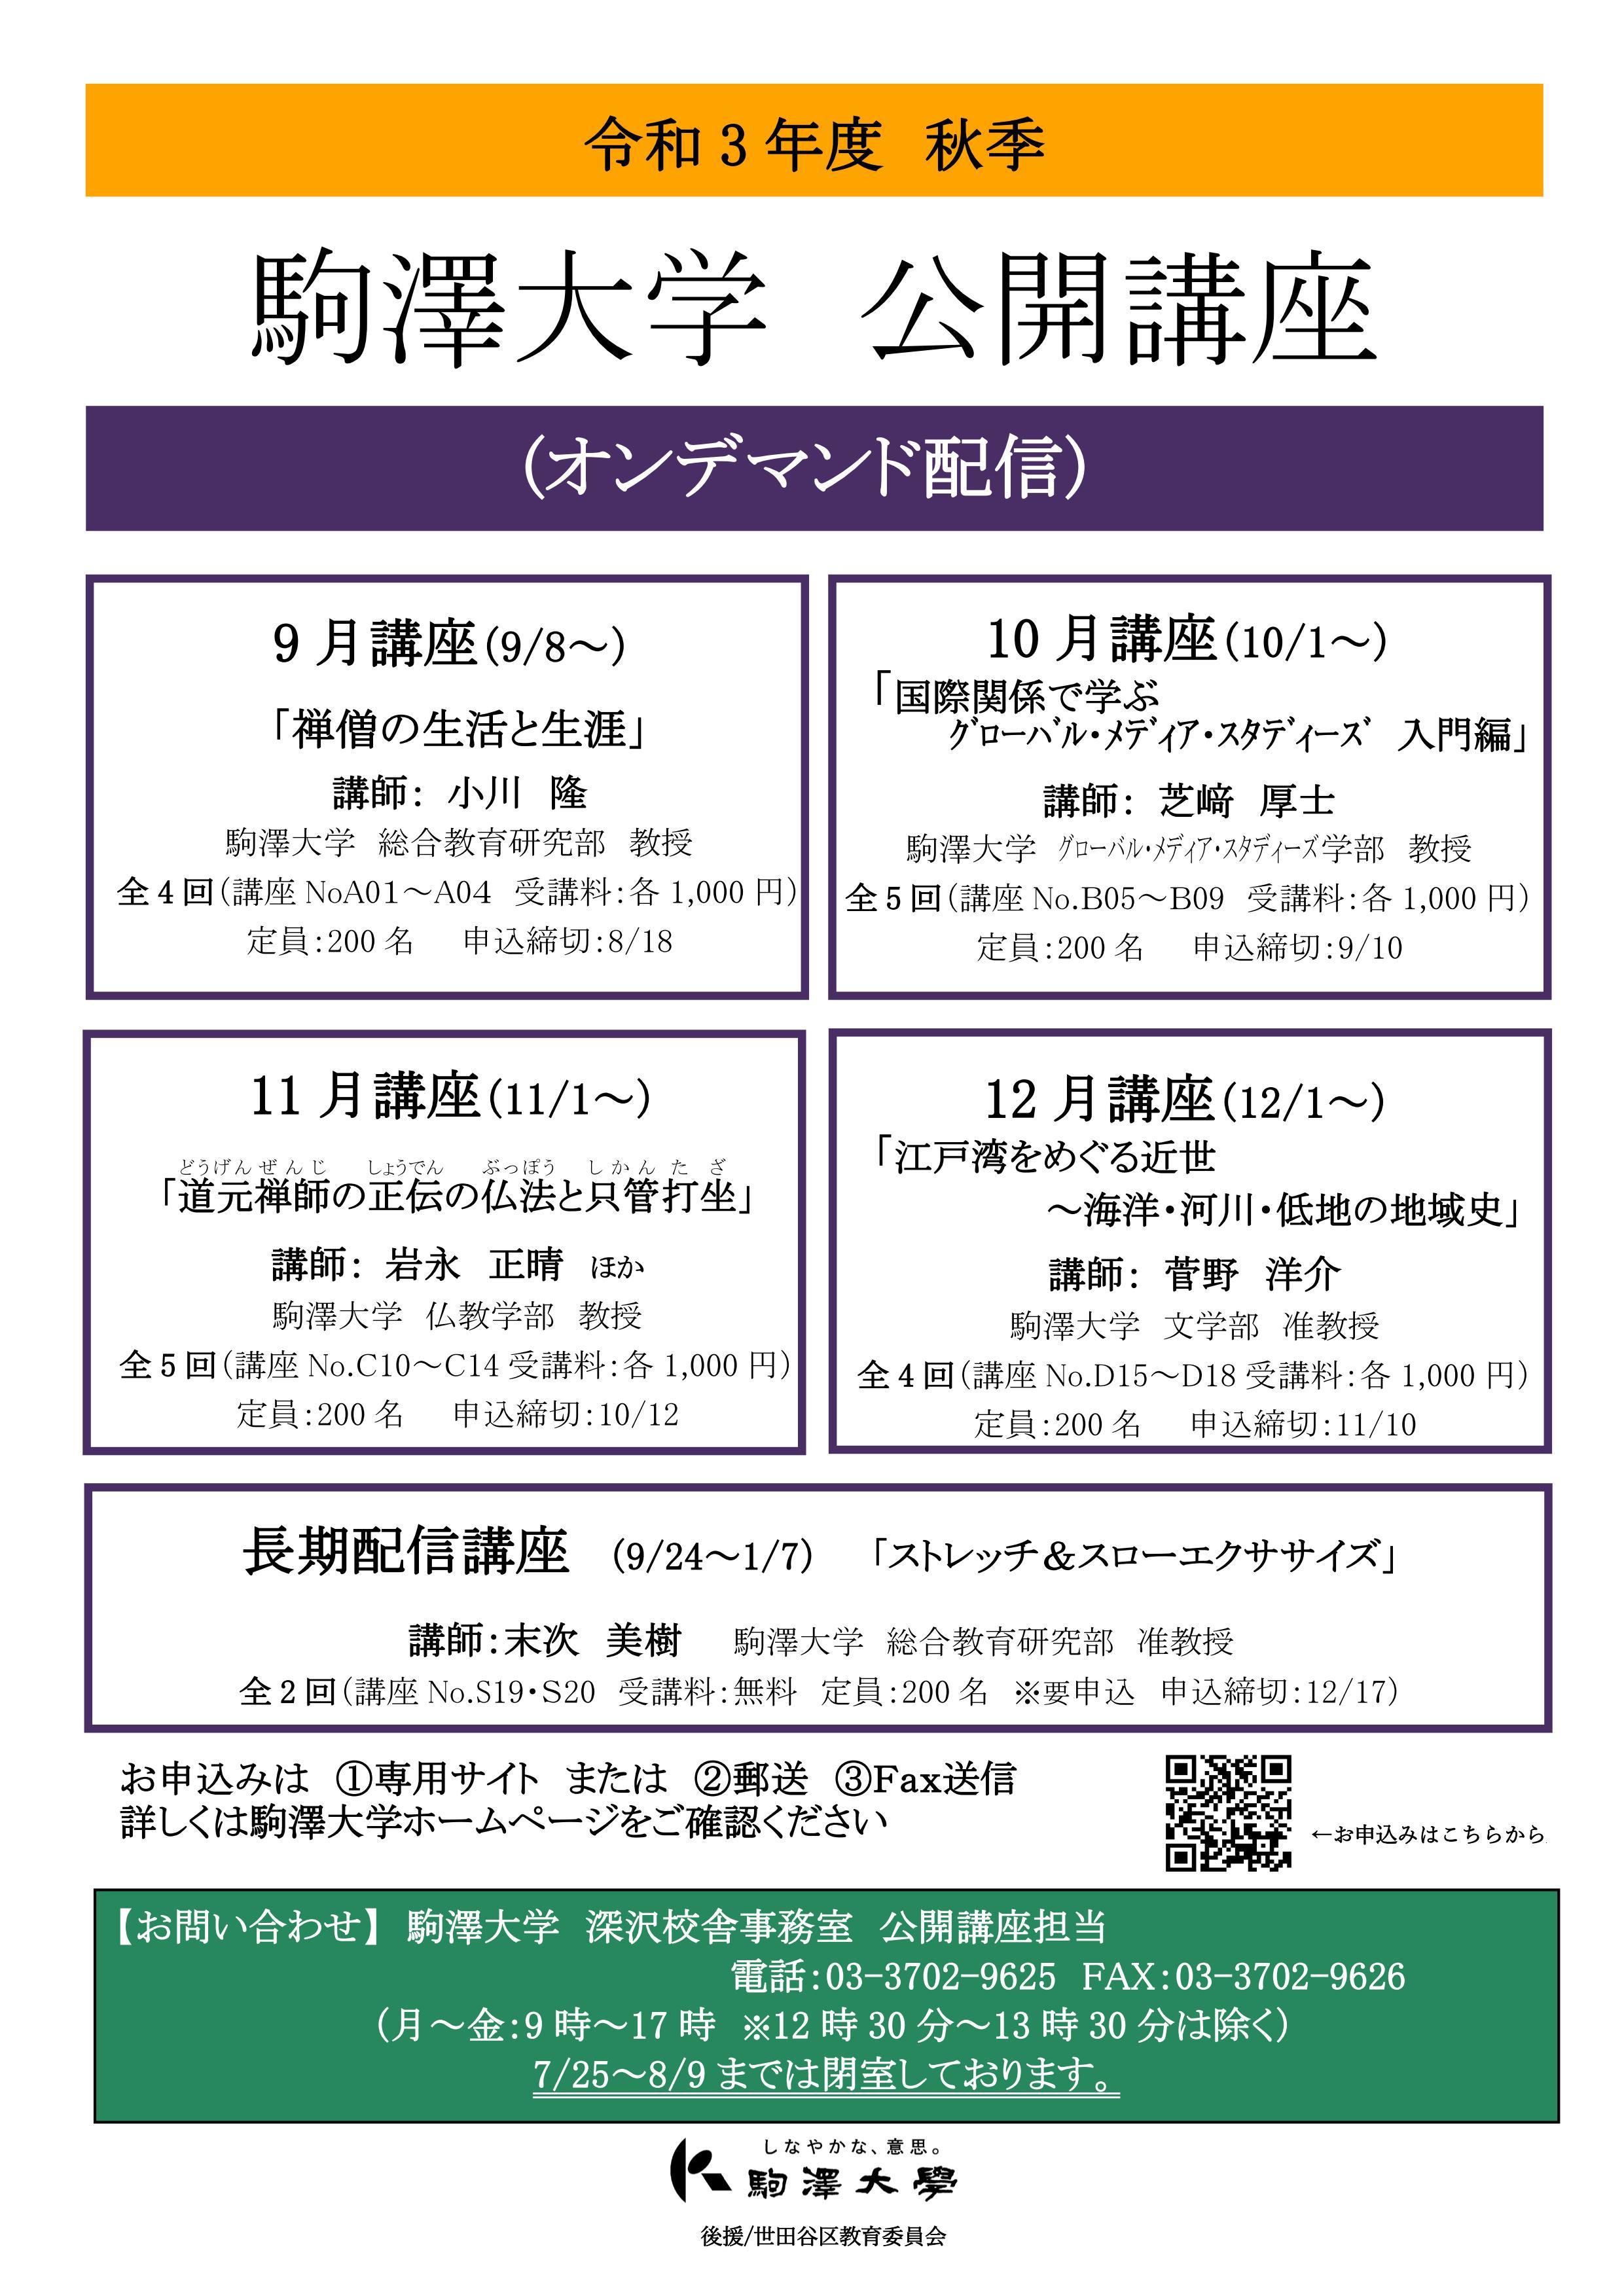 駒澤大学が令和3年度秋季公開講座をオンデマンド配信で開講 -- 10月・11月・12月講座等の申込受付中、特定の回のみの受講も可